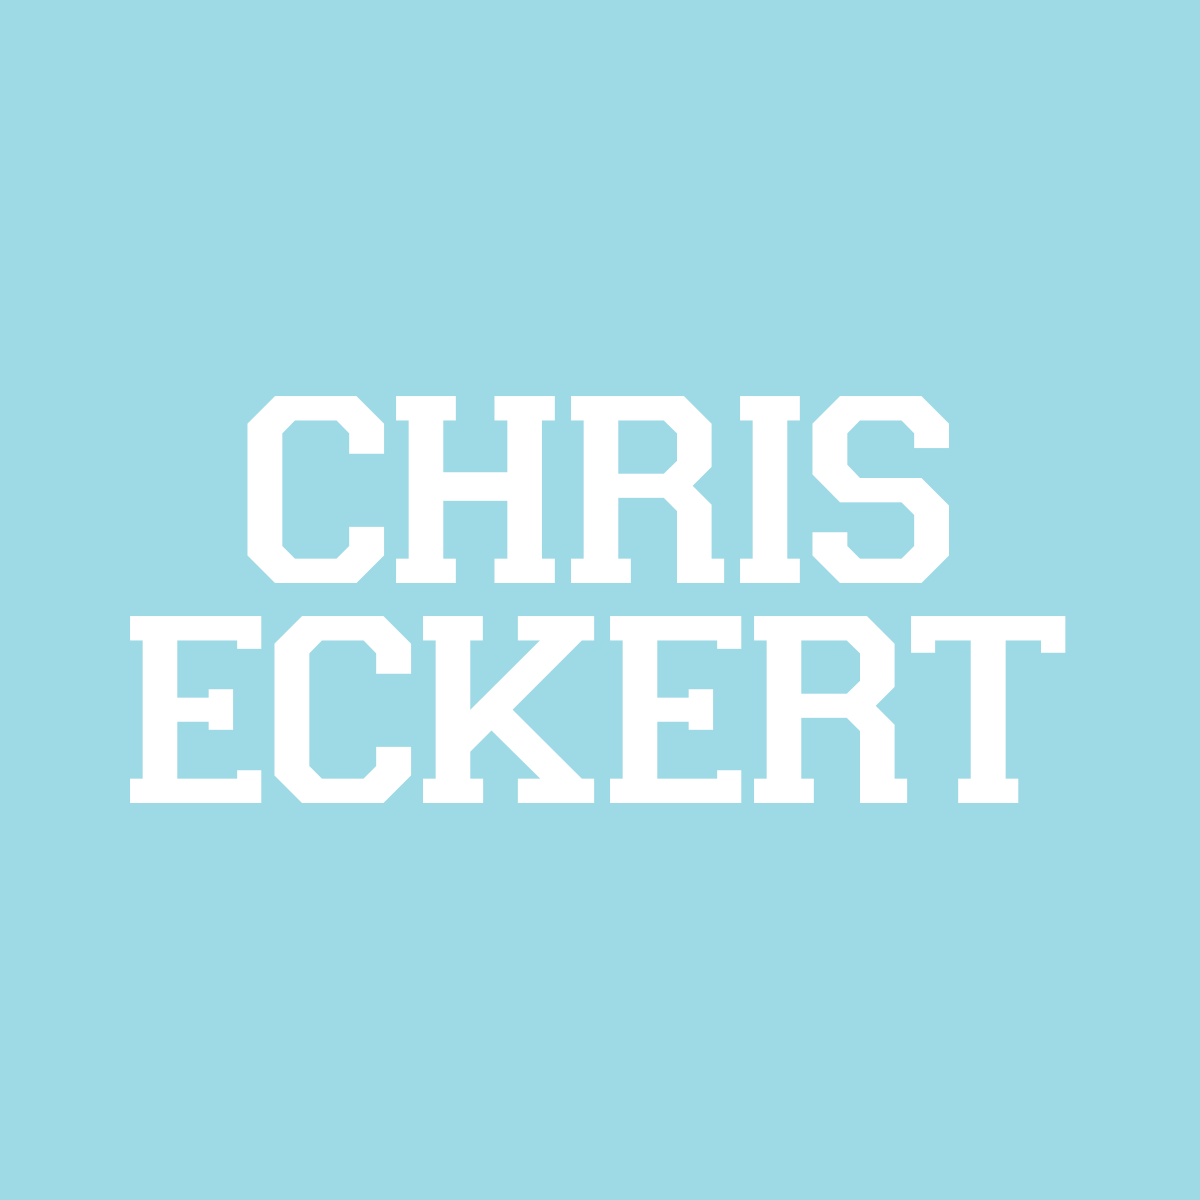 Chris Eckert